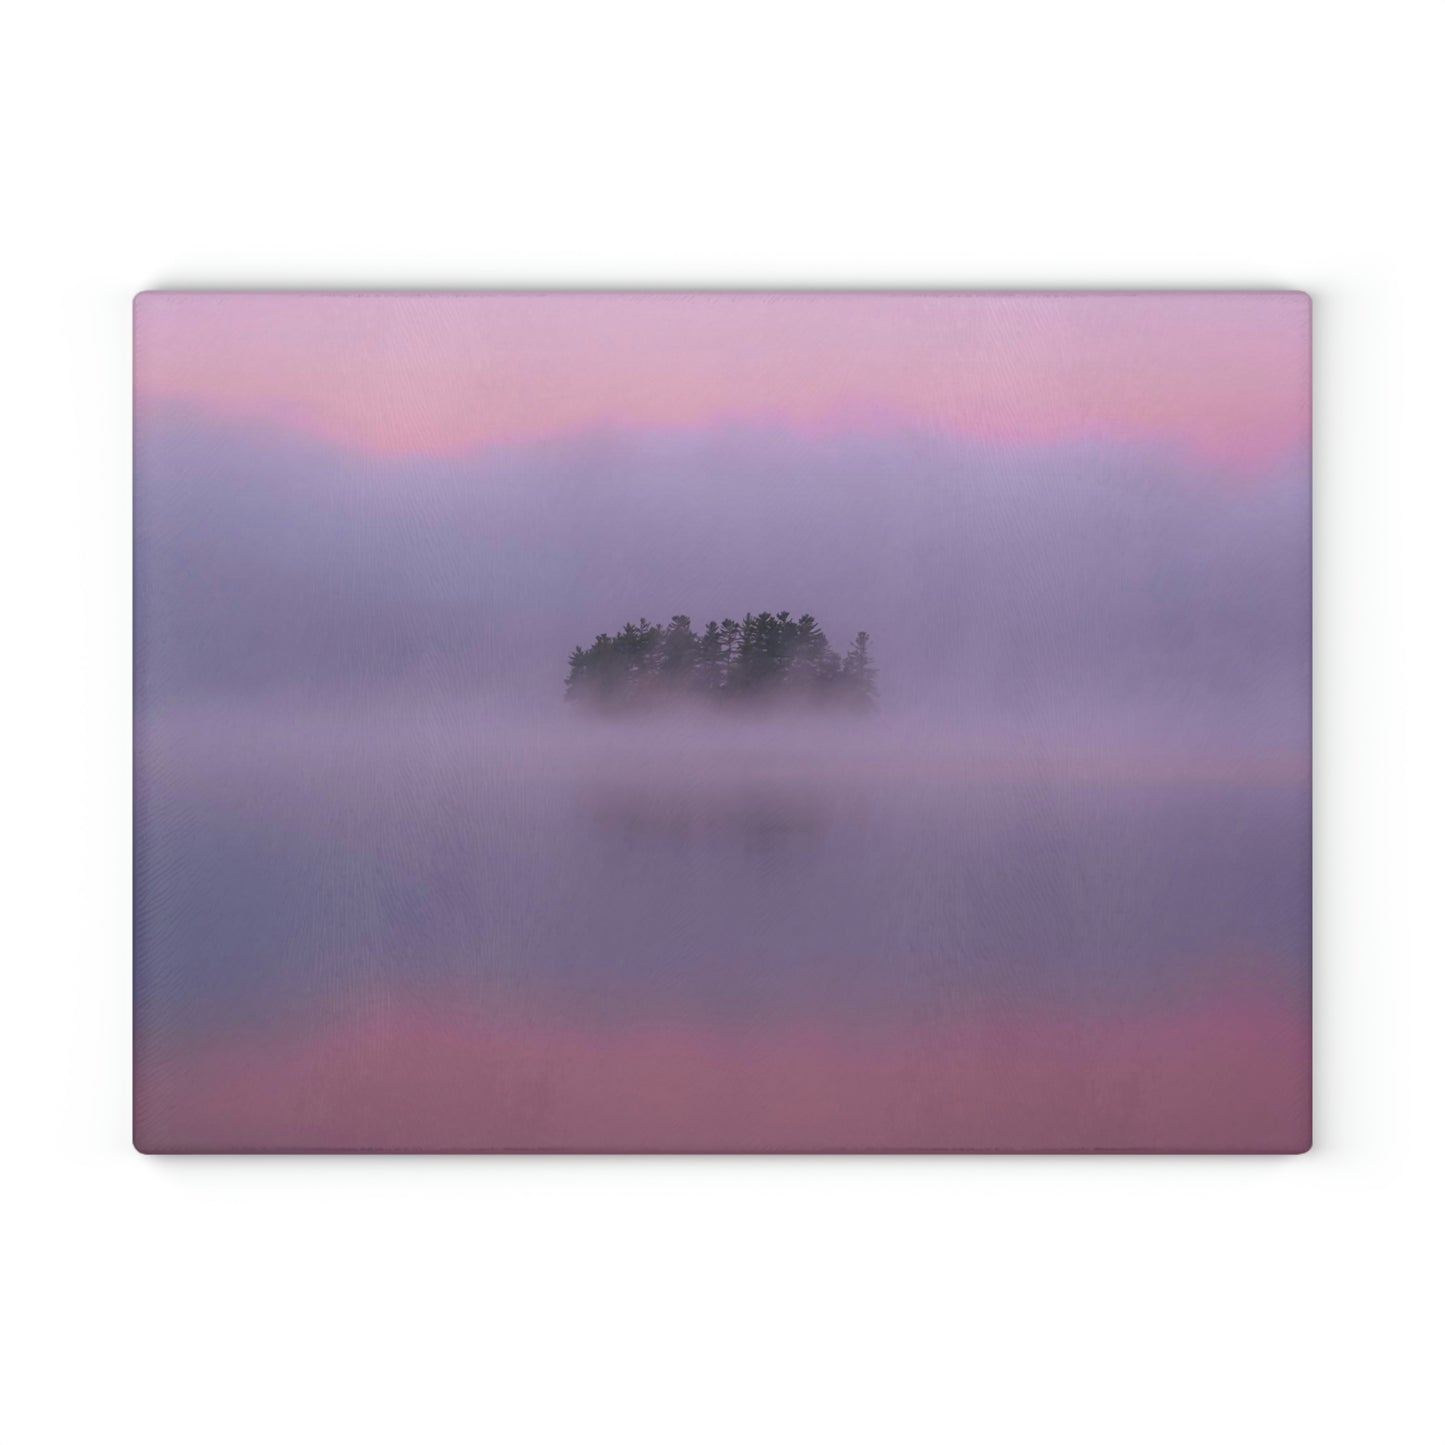 Glass Cutting Board - Crisp Autumn Sunrise, Tupper Lake